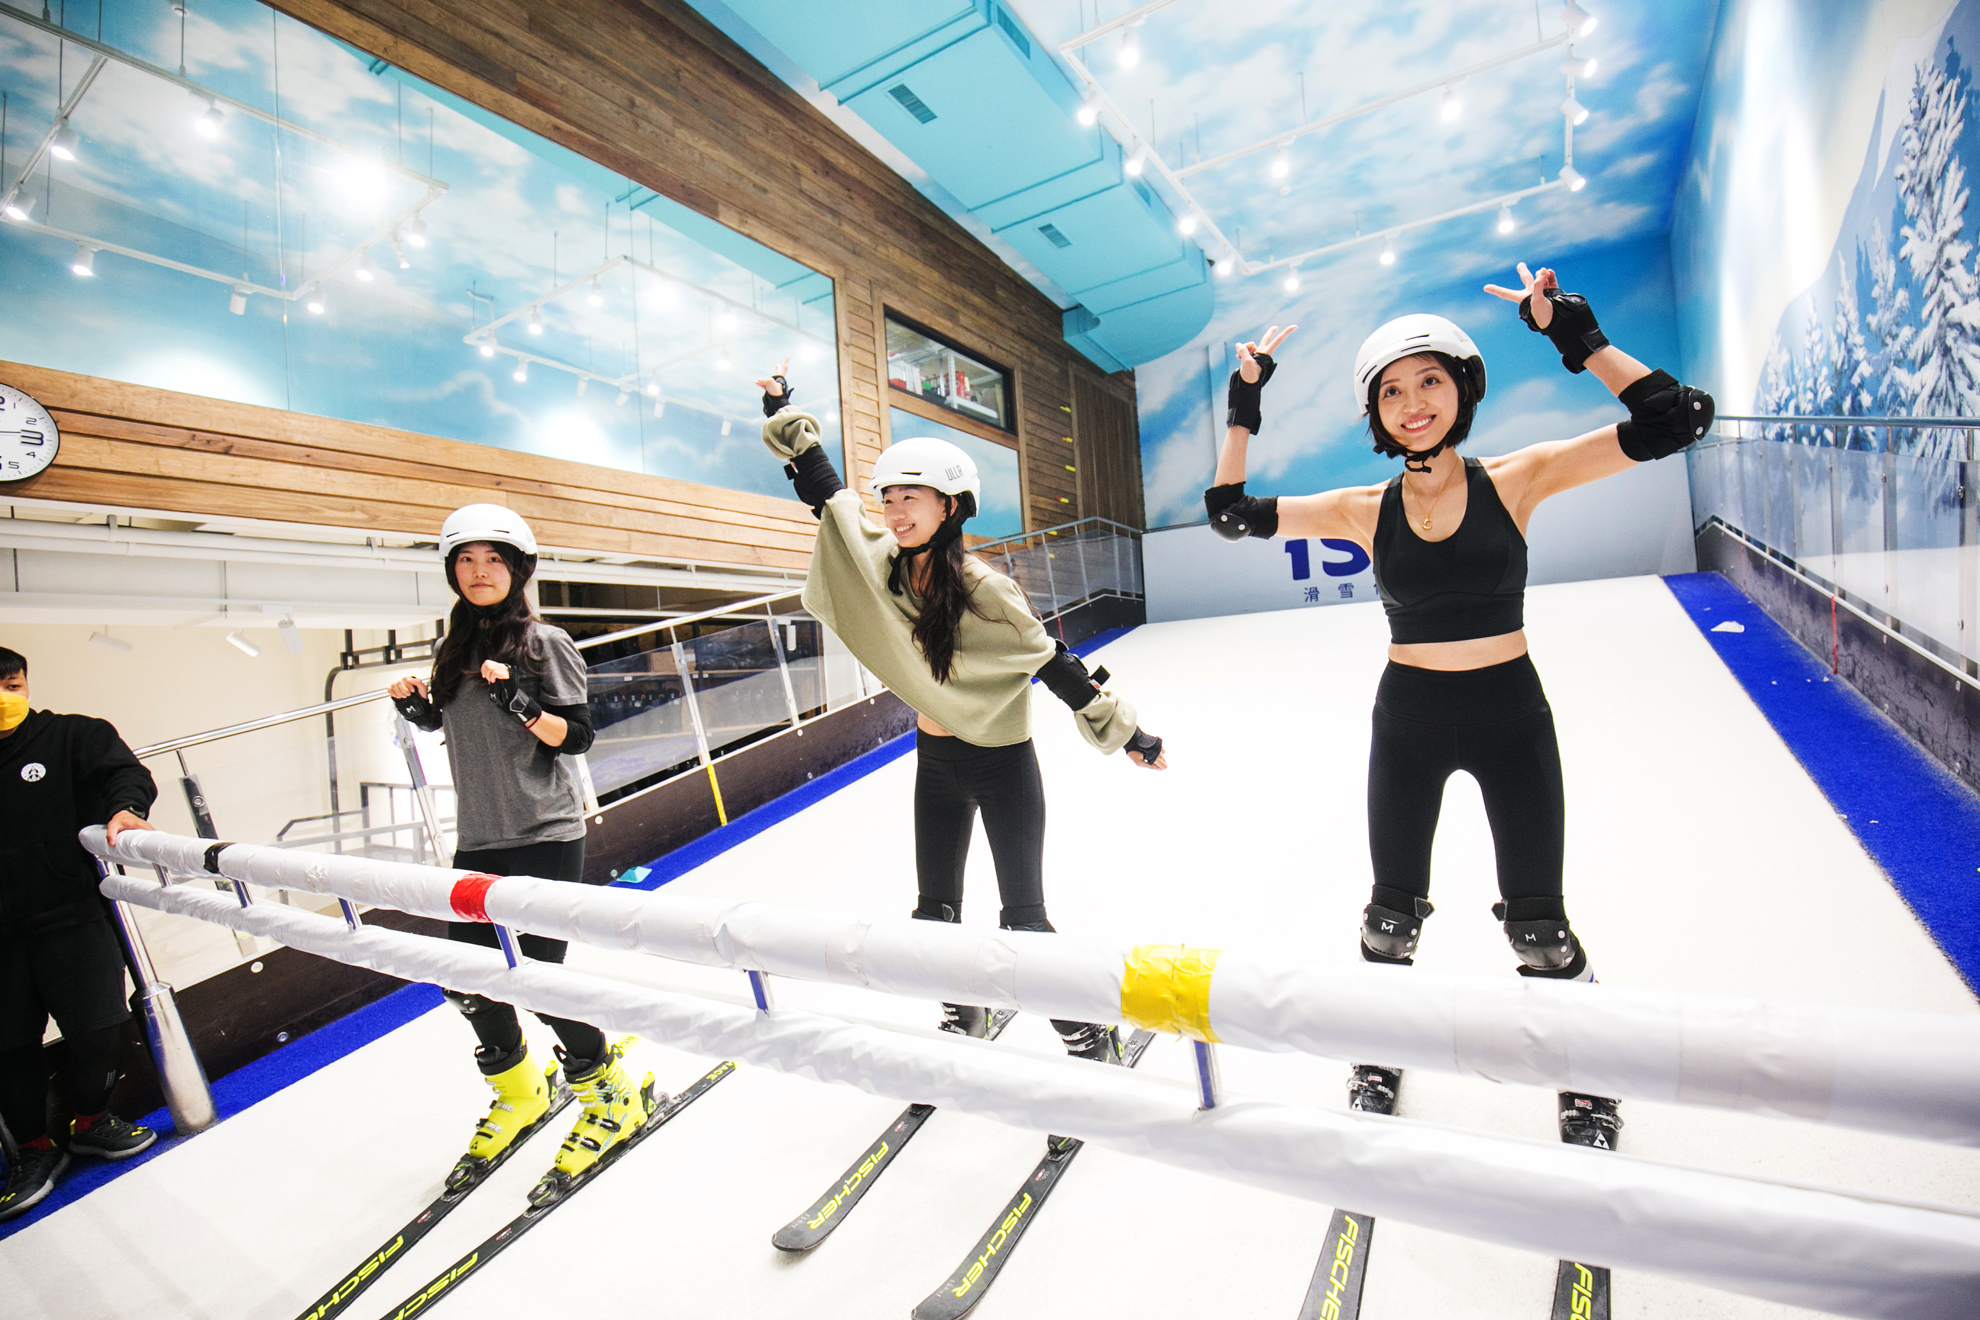 好玩的滑雪 Team Building 團體活動 就在 iSKI滑雪俱樂部